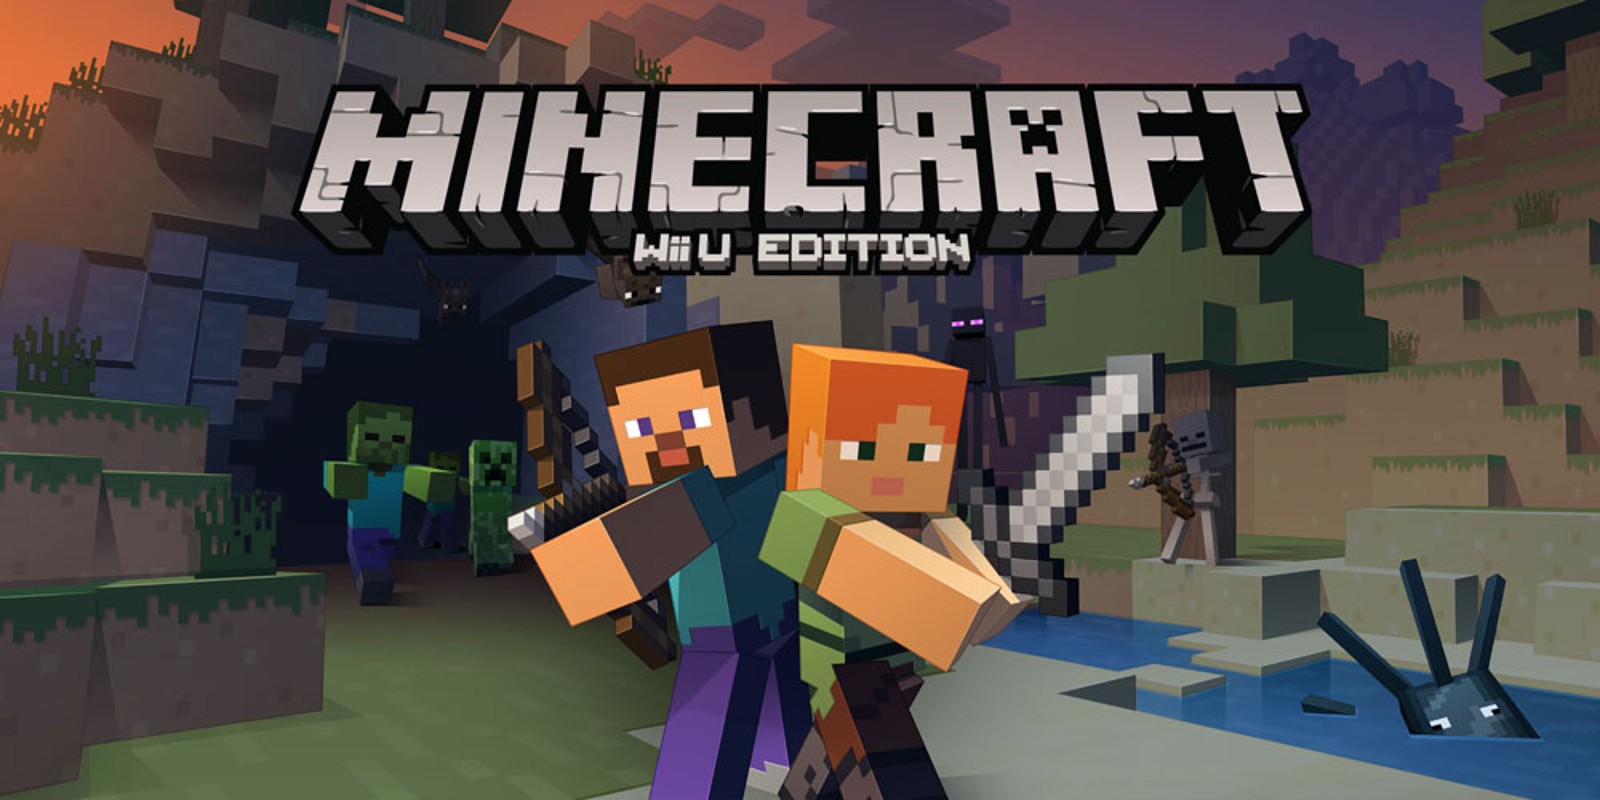 stel je voor magneet Leegte Minecraft: Wii U Edition | Wii U-downloadsoftware | Games | Nintendo